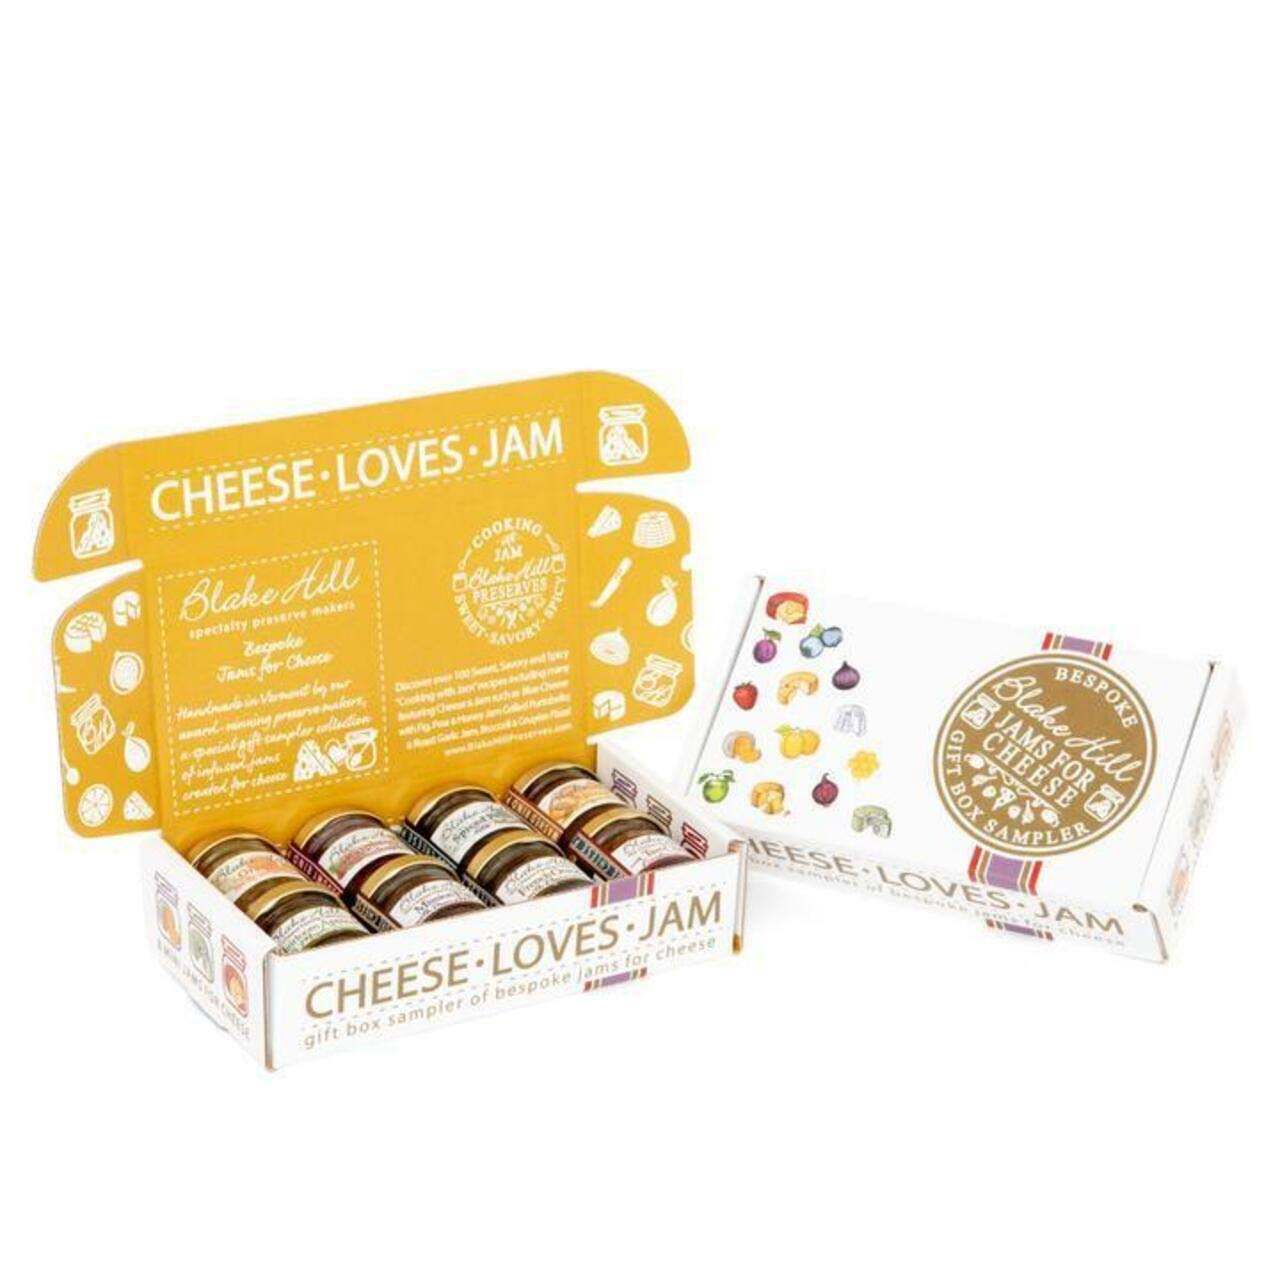 Blake Hill Preserves Cheese Loves Jam Gift Box Sampler